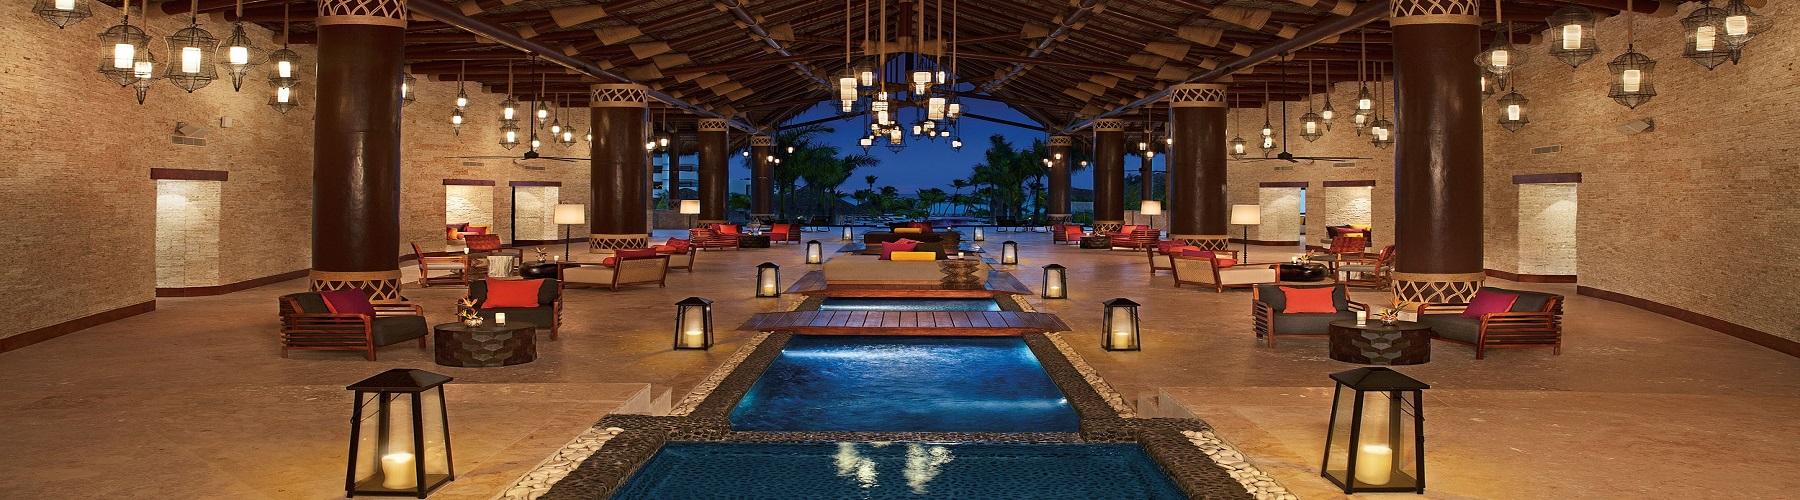 Лучшие отели в Доминикане Secrets Resort and Spa